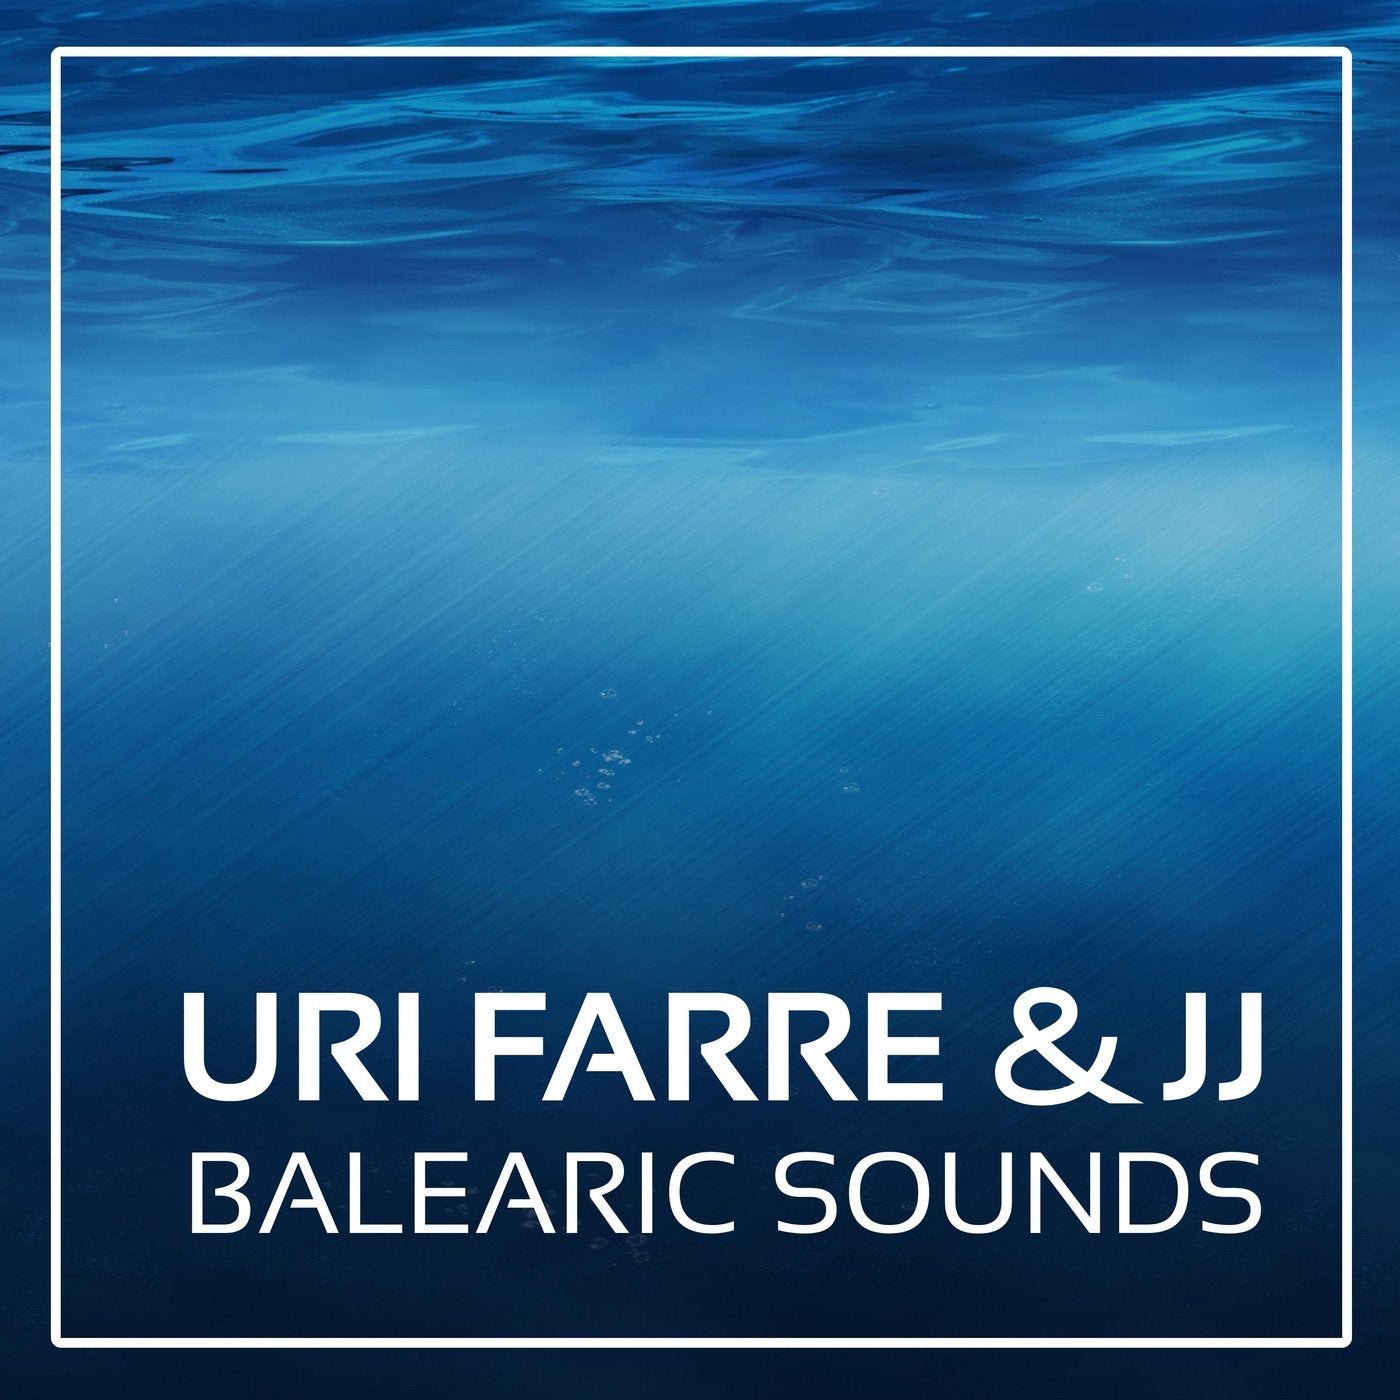 Balearic Sounds (Original Mix)